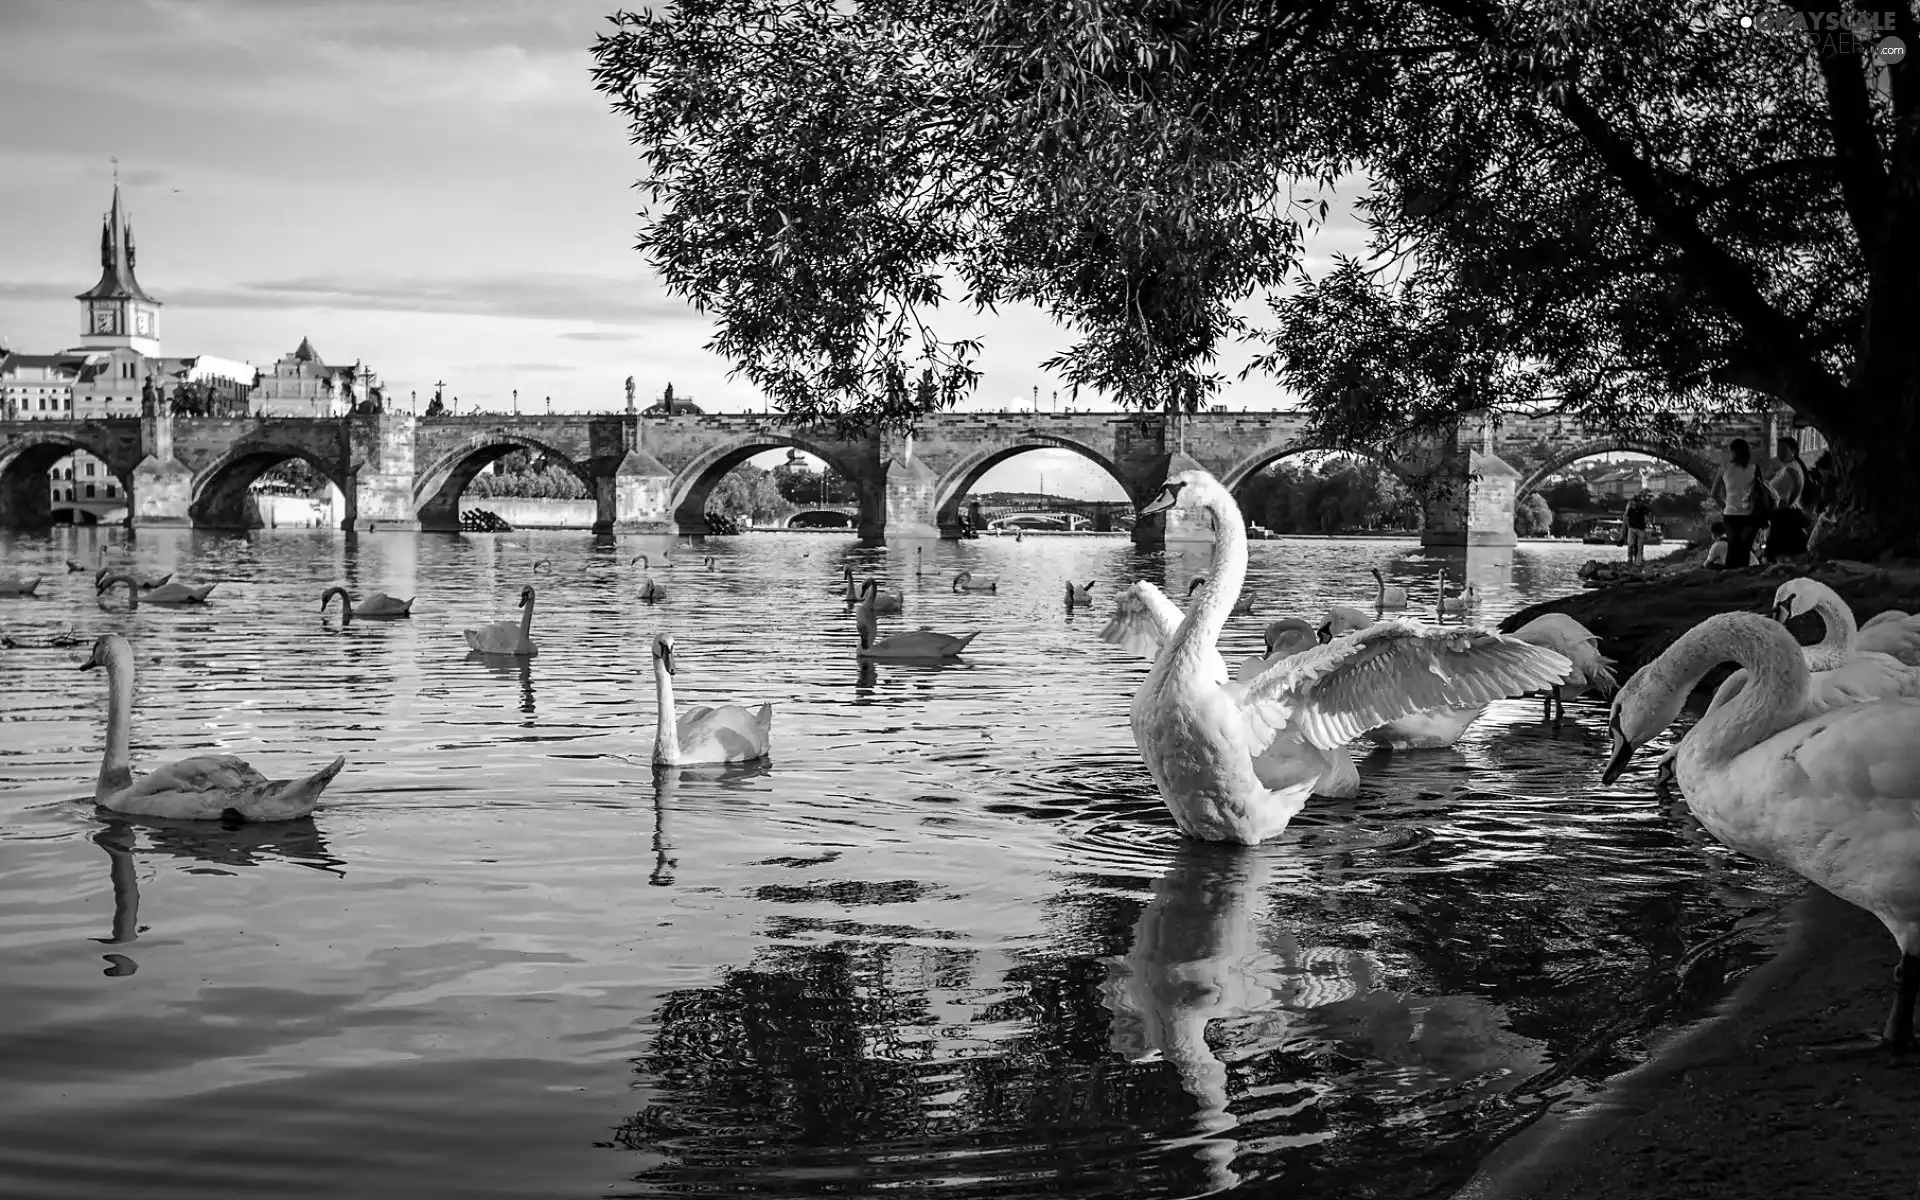 Swan, River, bridge